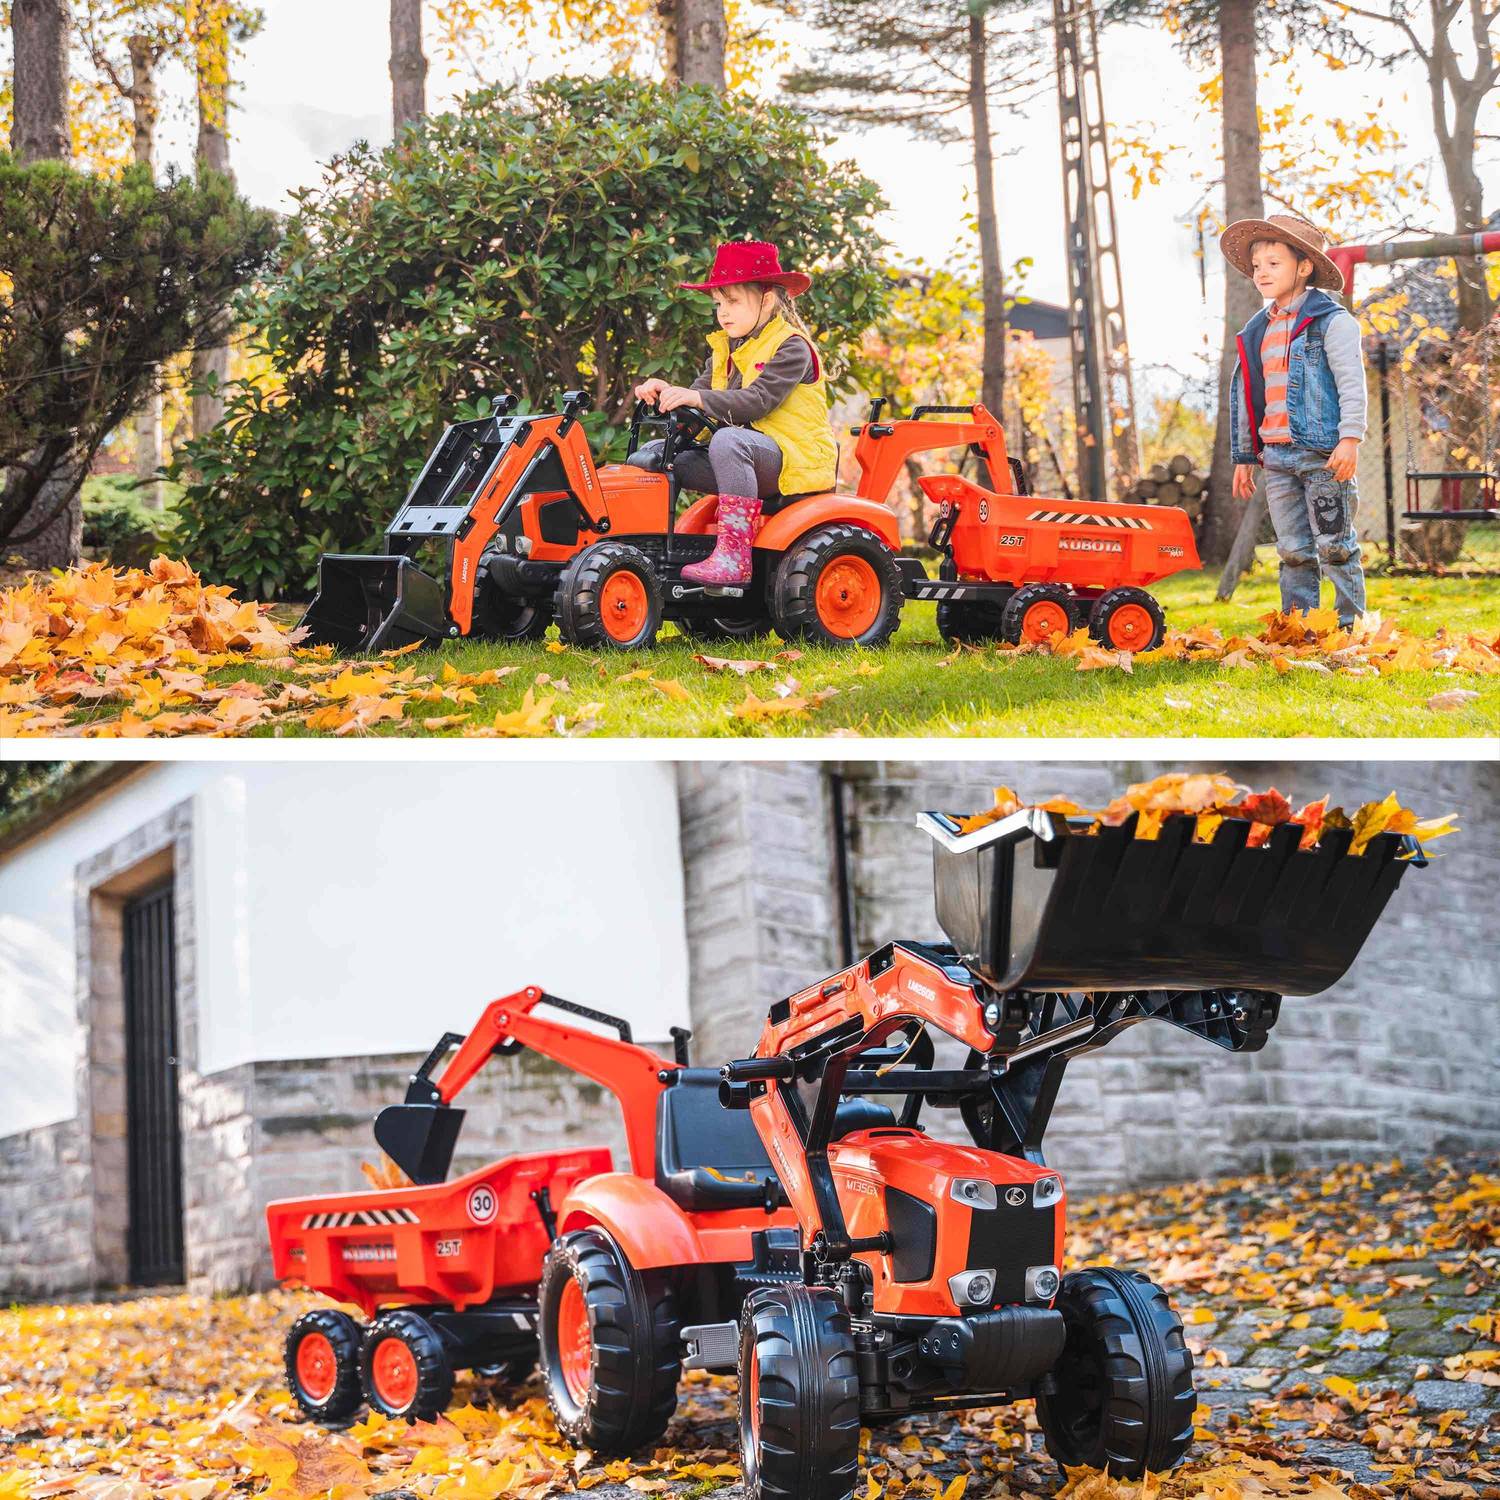  Tractopelle Kubota pour enfant - Bob - Tracteur à pédales avec excavatrice et remorque basculante 4 roues, orange Photo3